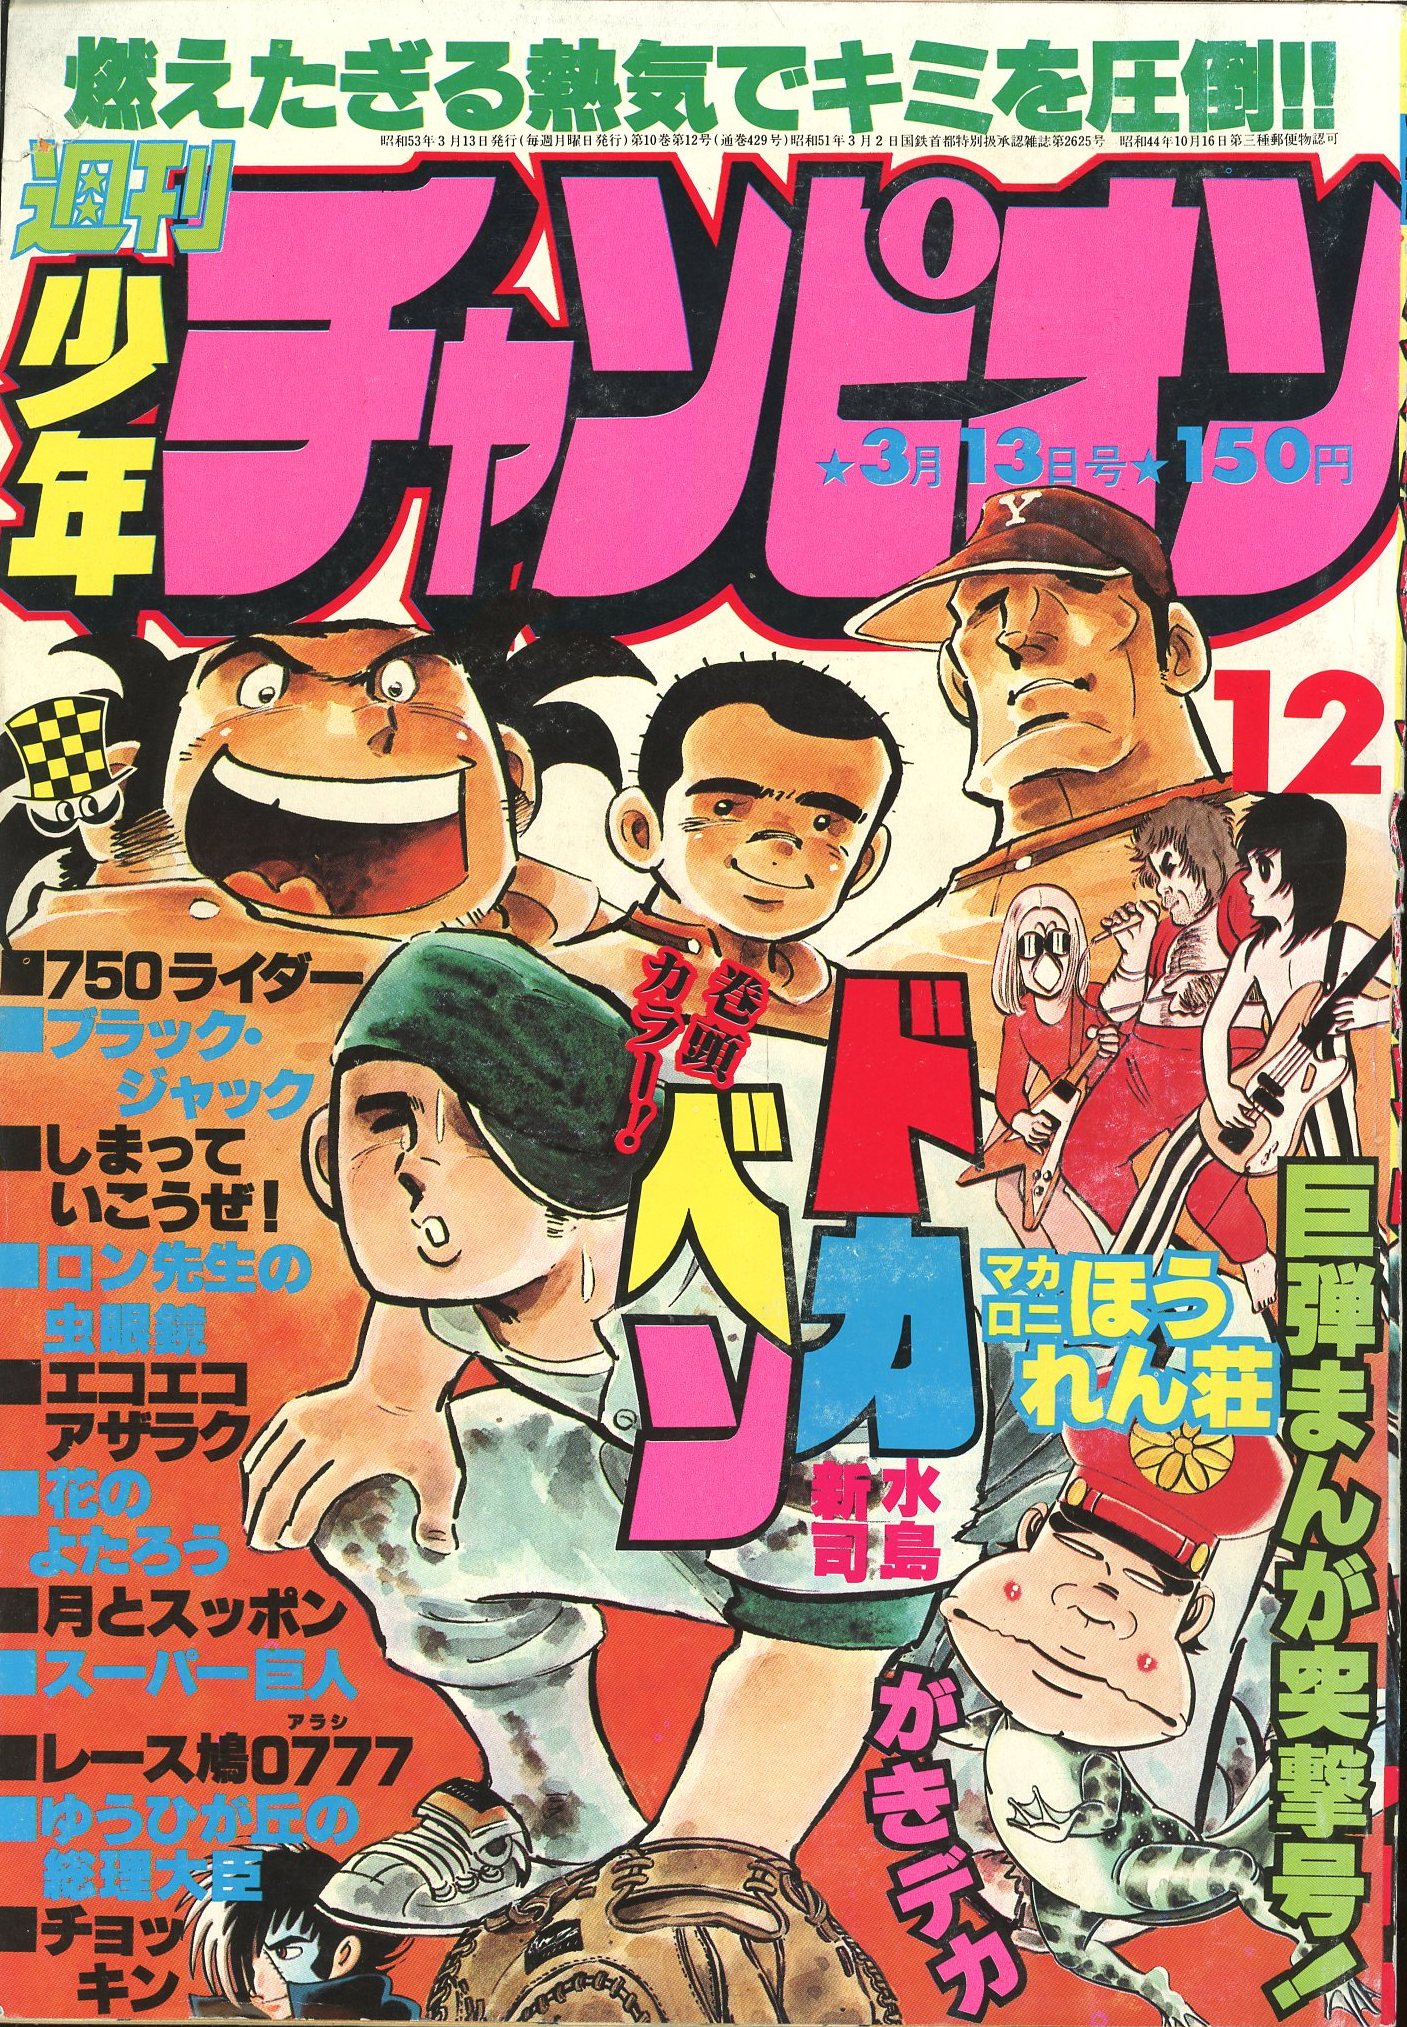 秋田書店 1978年(昭和53年)の漫画雑誌 週刊少年チャンピオン1978年 